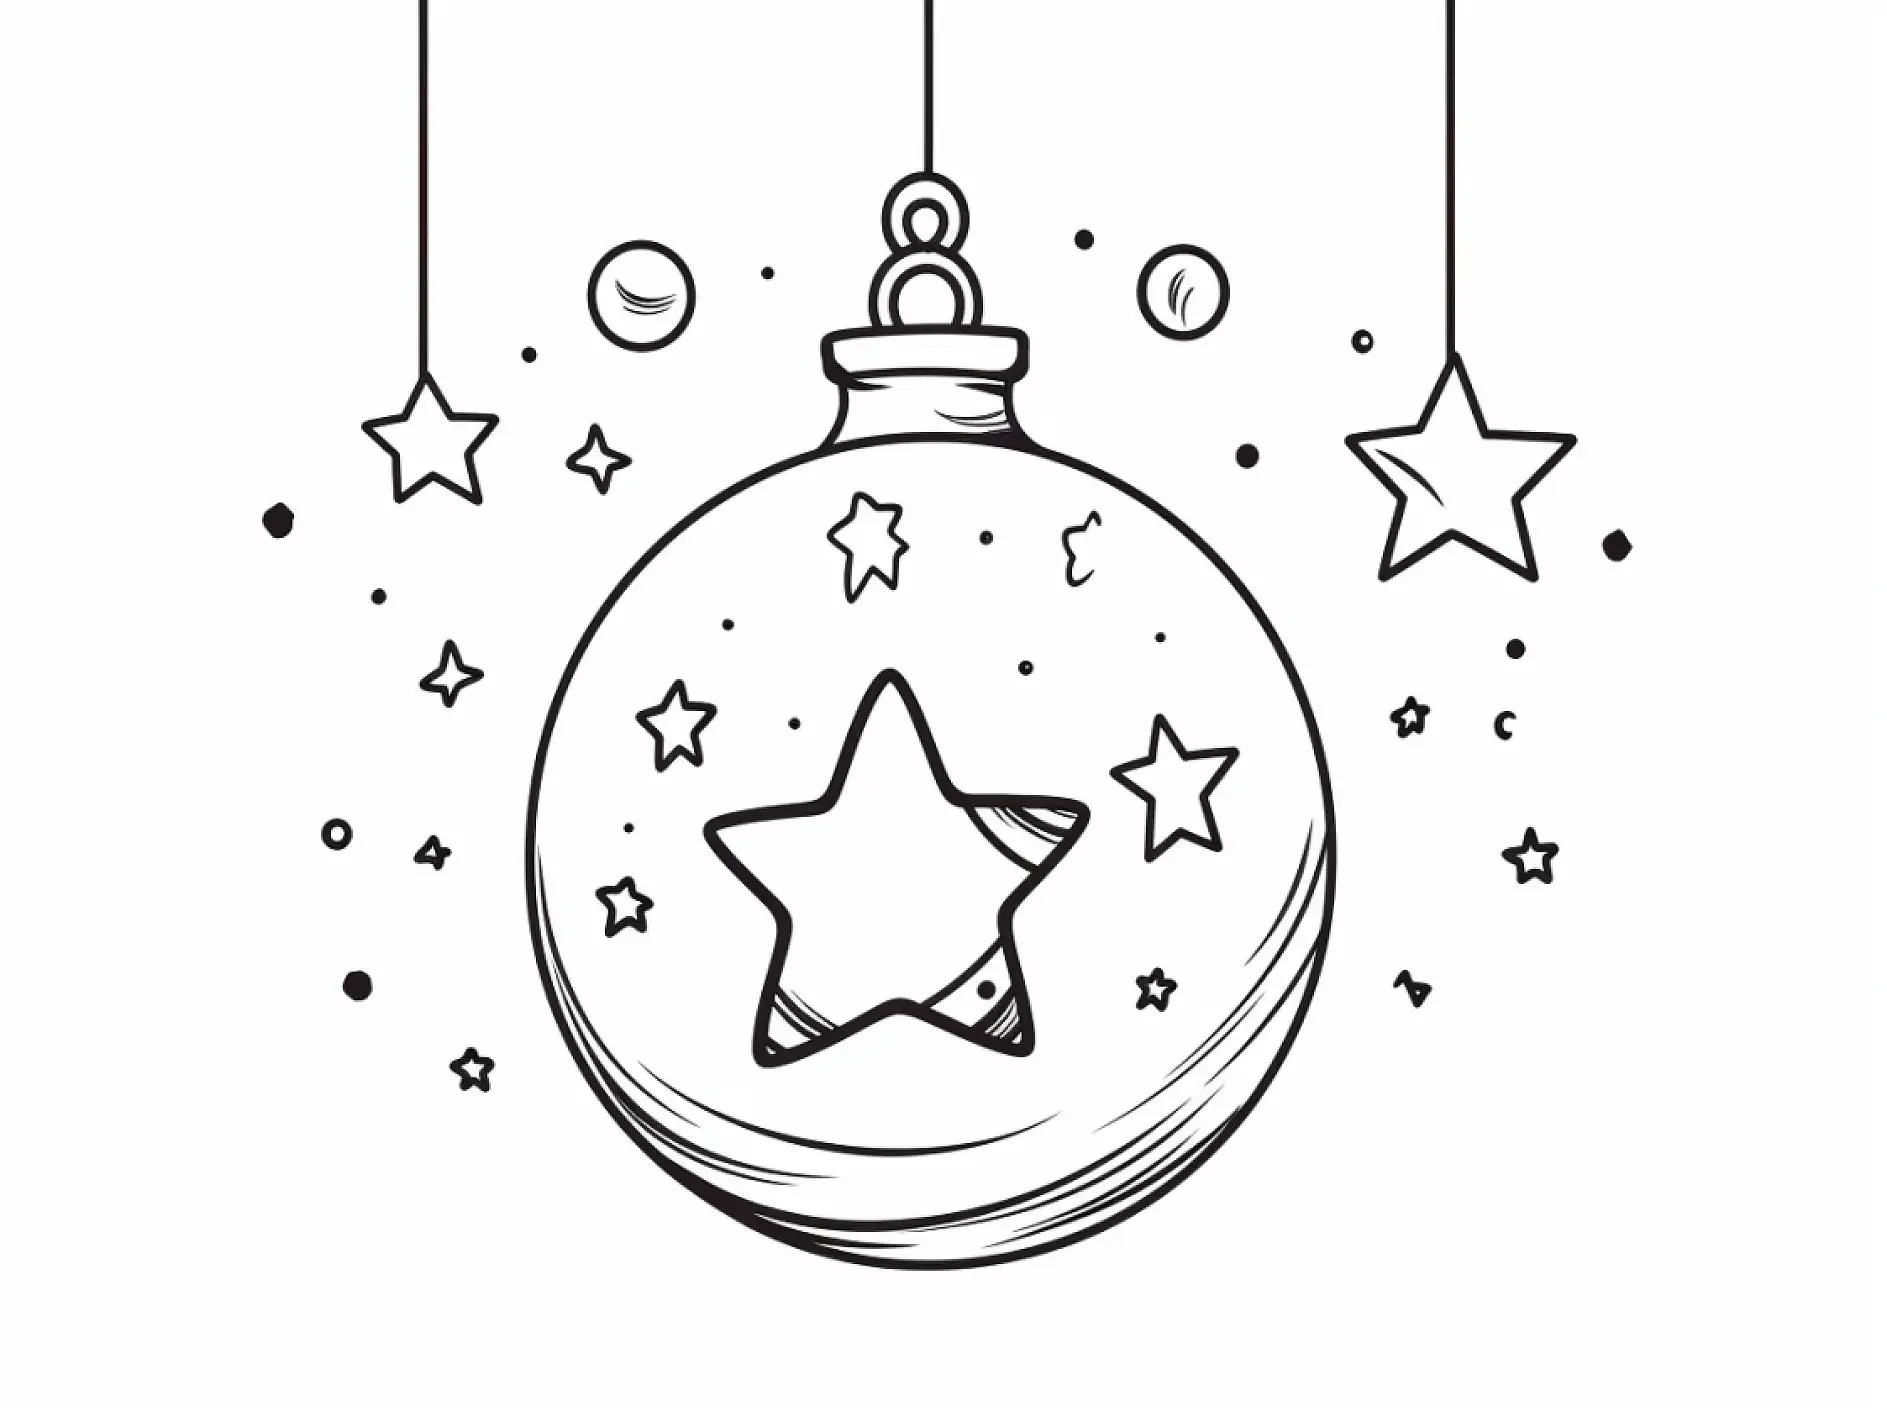 Ausmalbild Weihnachtskugel Stern mittig Sterne Punkte hängend